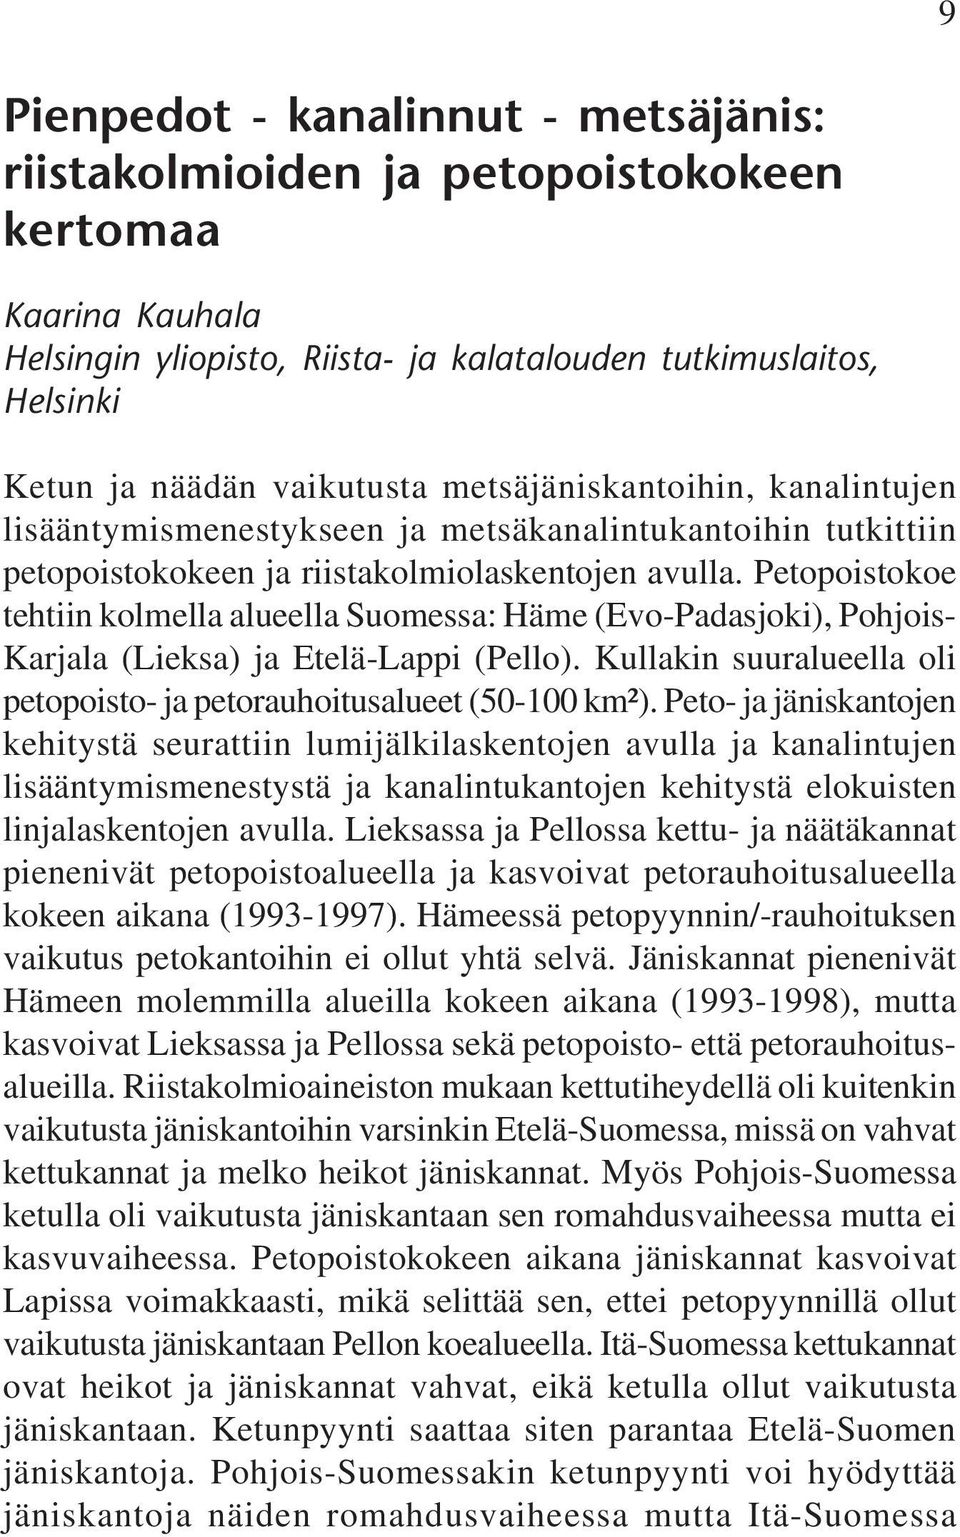 Petopoistokoe tehtiin kolmella alueella Suomessa: Häme (Evo-Padasjoki), Pohjois- Karjala (Lieksa) ja Etelä-Lappi (Pello). Kullakin suuralueella oli petopoisto- ja petorauhoitusalueet (50-100 km²).